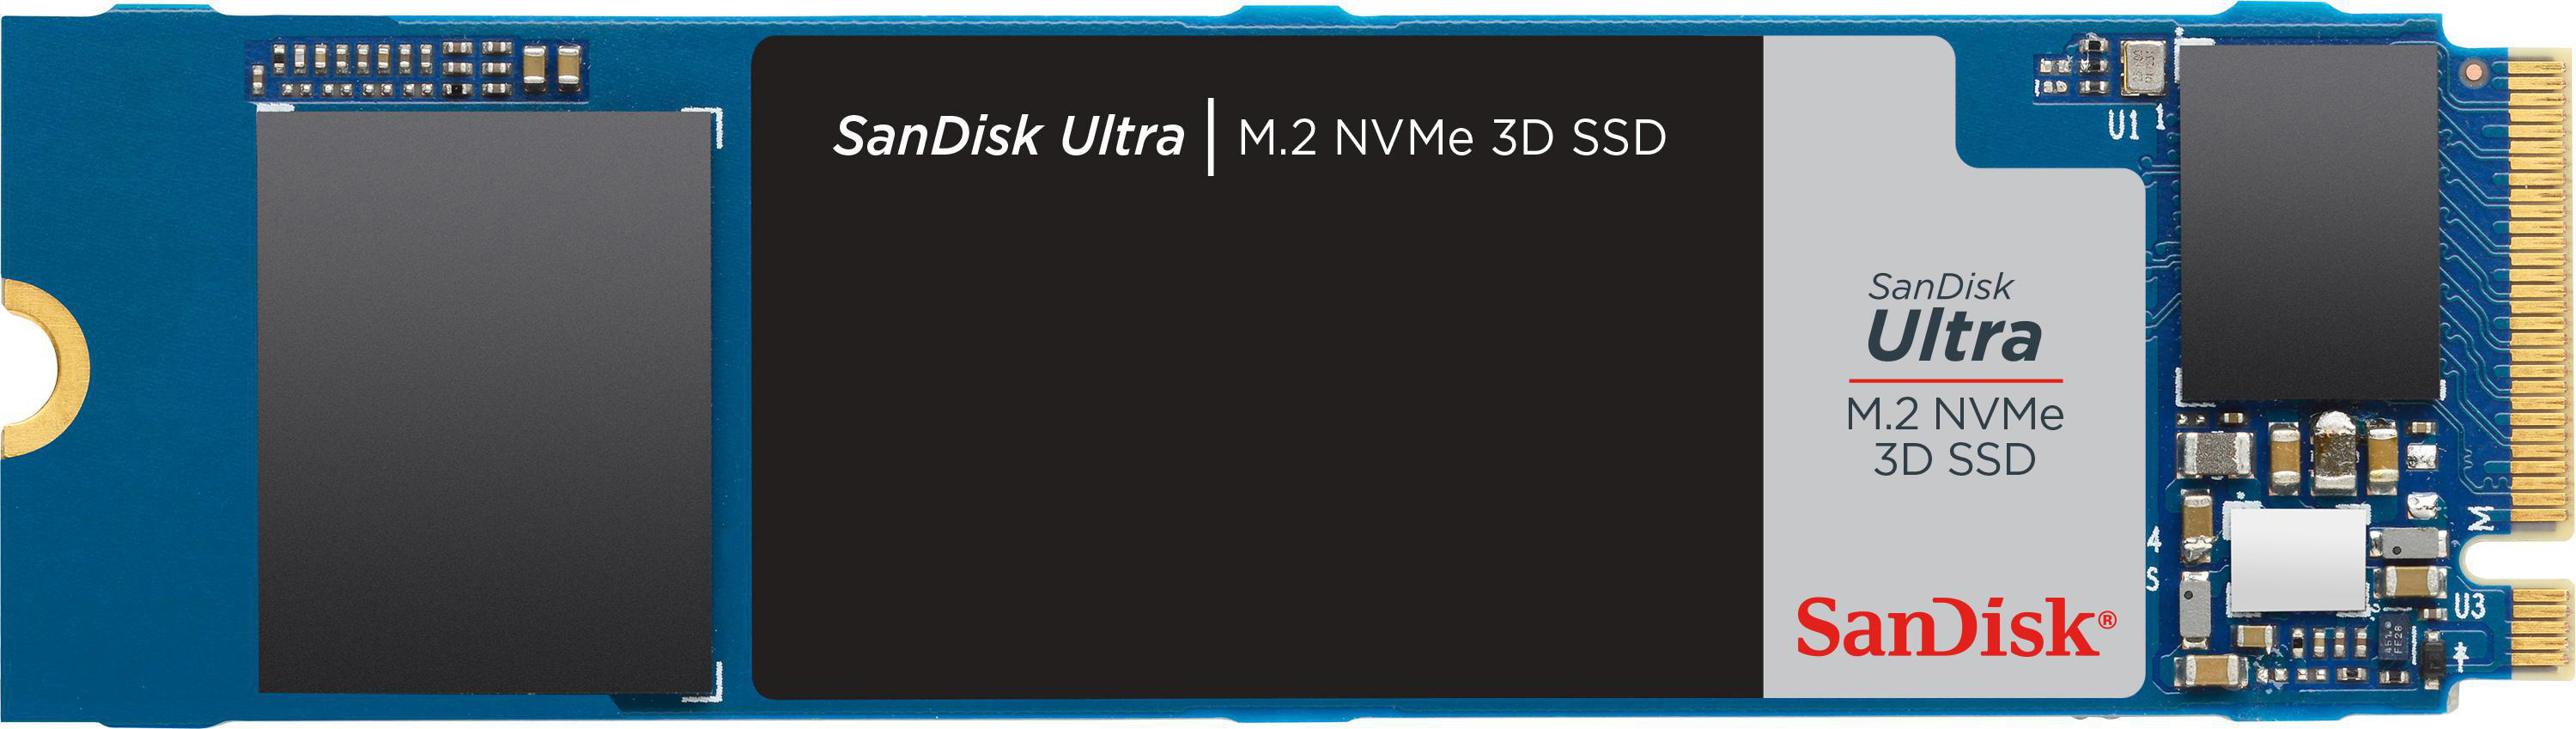 SANDISK Ultra 3D Speicher, 1 Speicher M.2 NVMe, intern Interner TB via